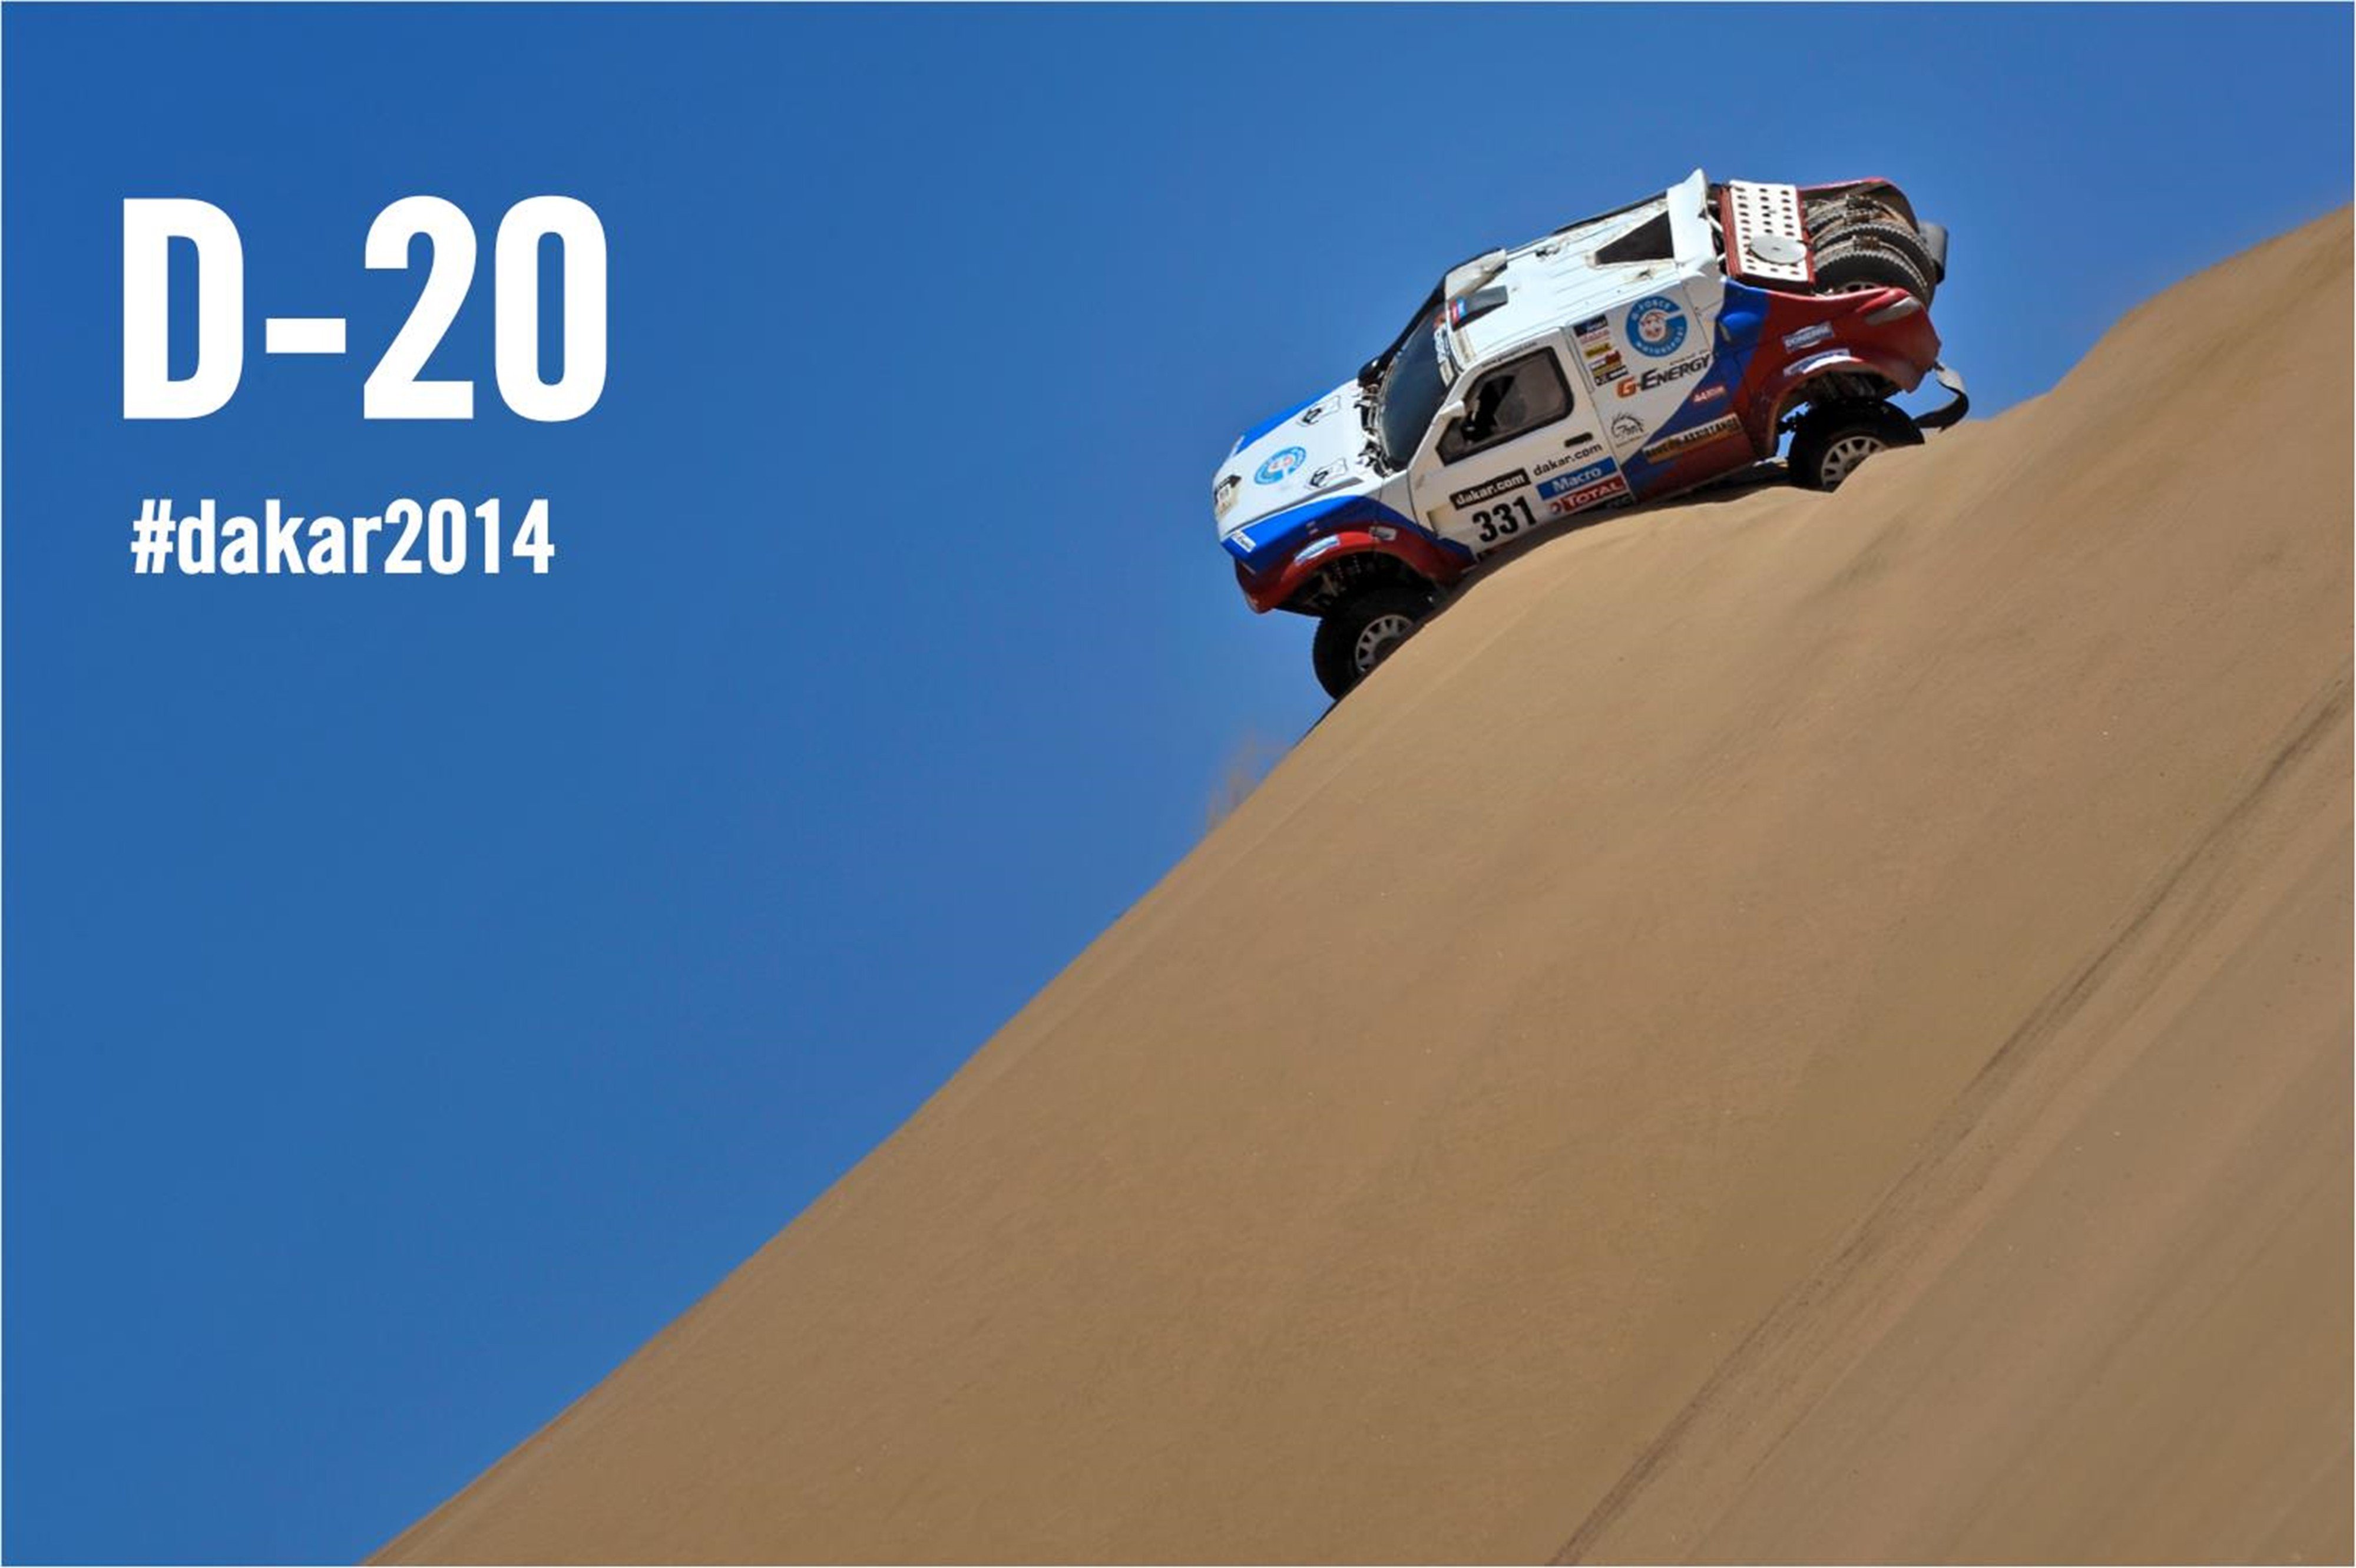 dakar, Rally, Race, Car, Racing, Desert, Sand, 4000x2662 Wallpaper